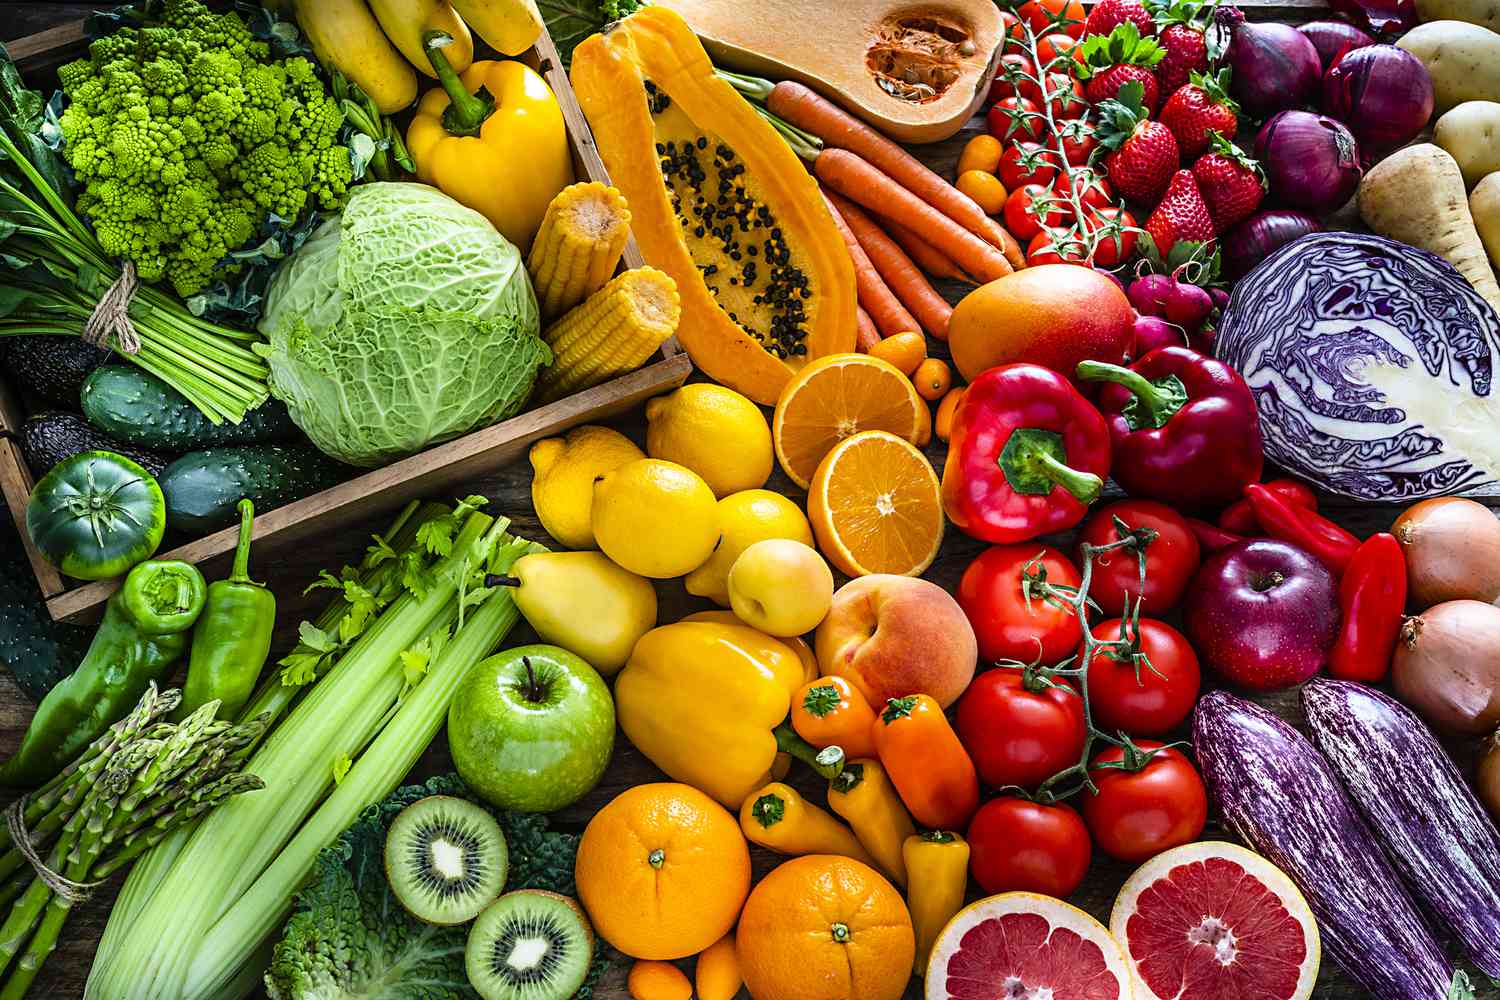 Lista actualizada de la Docena Sucia de Frutas y Verduras - ¿Debería utilizarla?